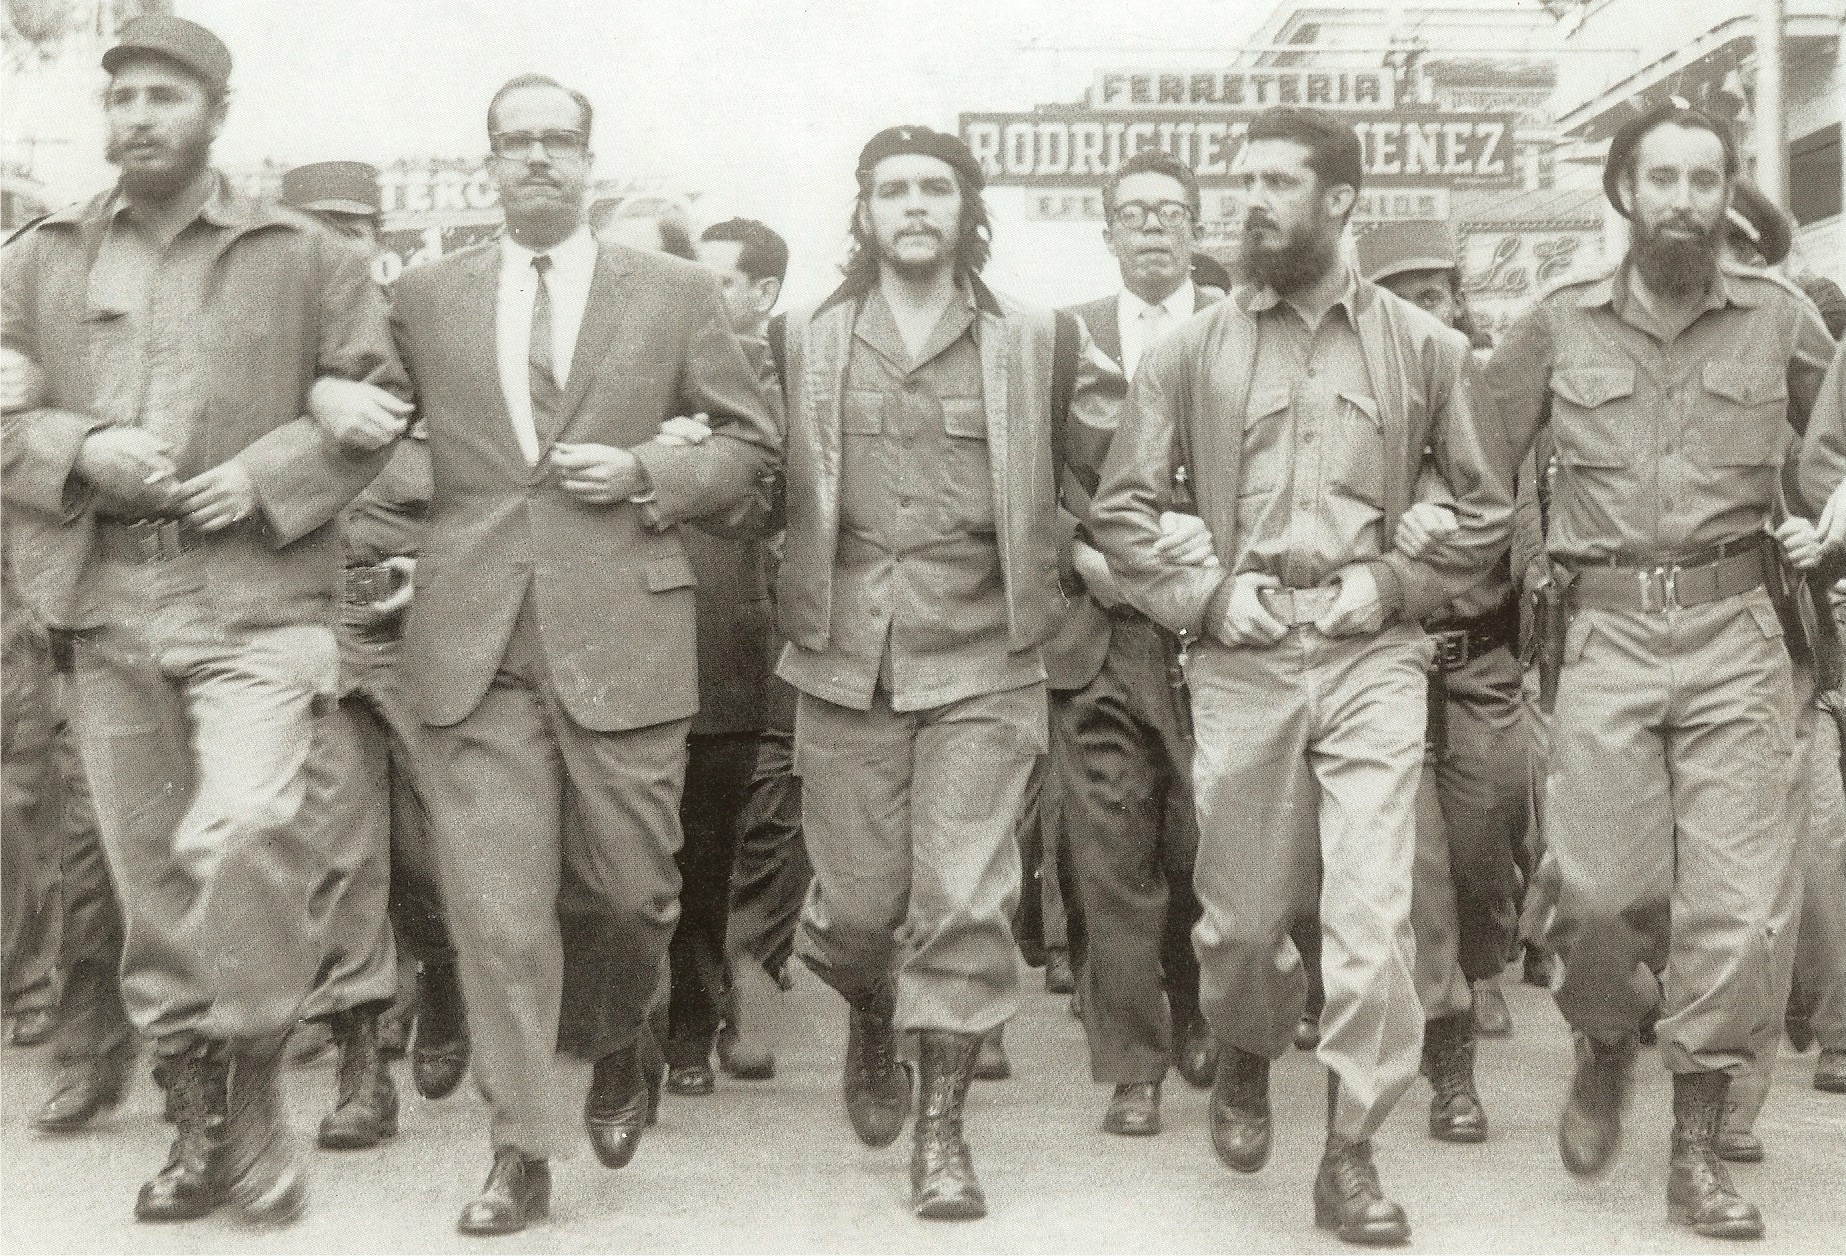 Fidel Castro Che Guevara at the La Coubre March